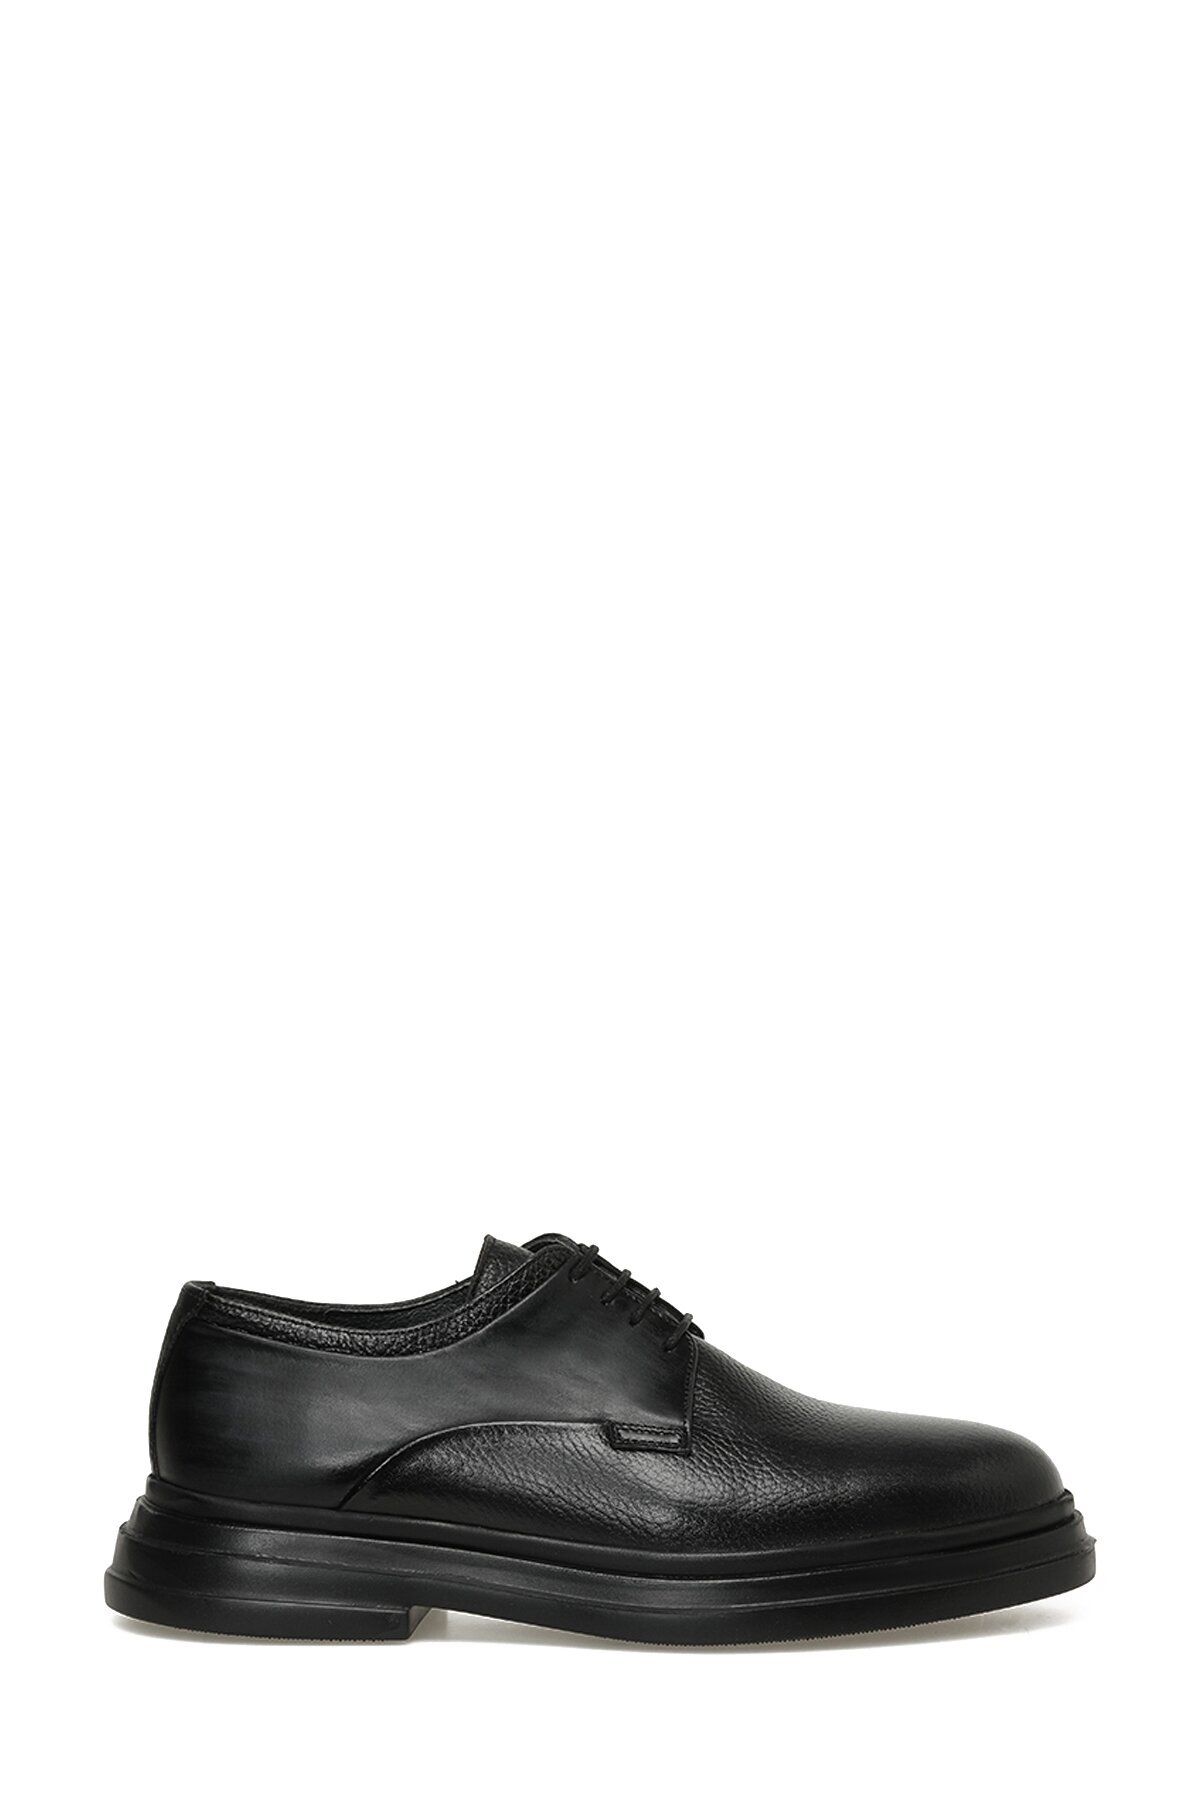 İnci INCI SIDE 3PR Siyah Erkek Klasik Ayakkabı